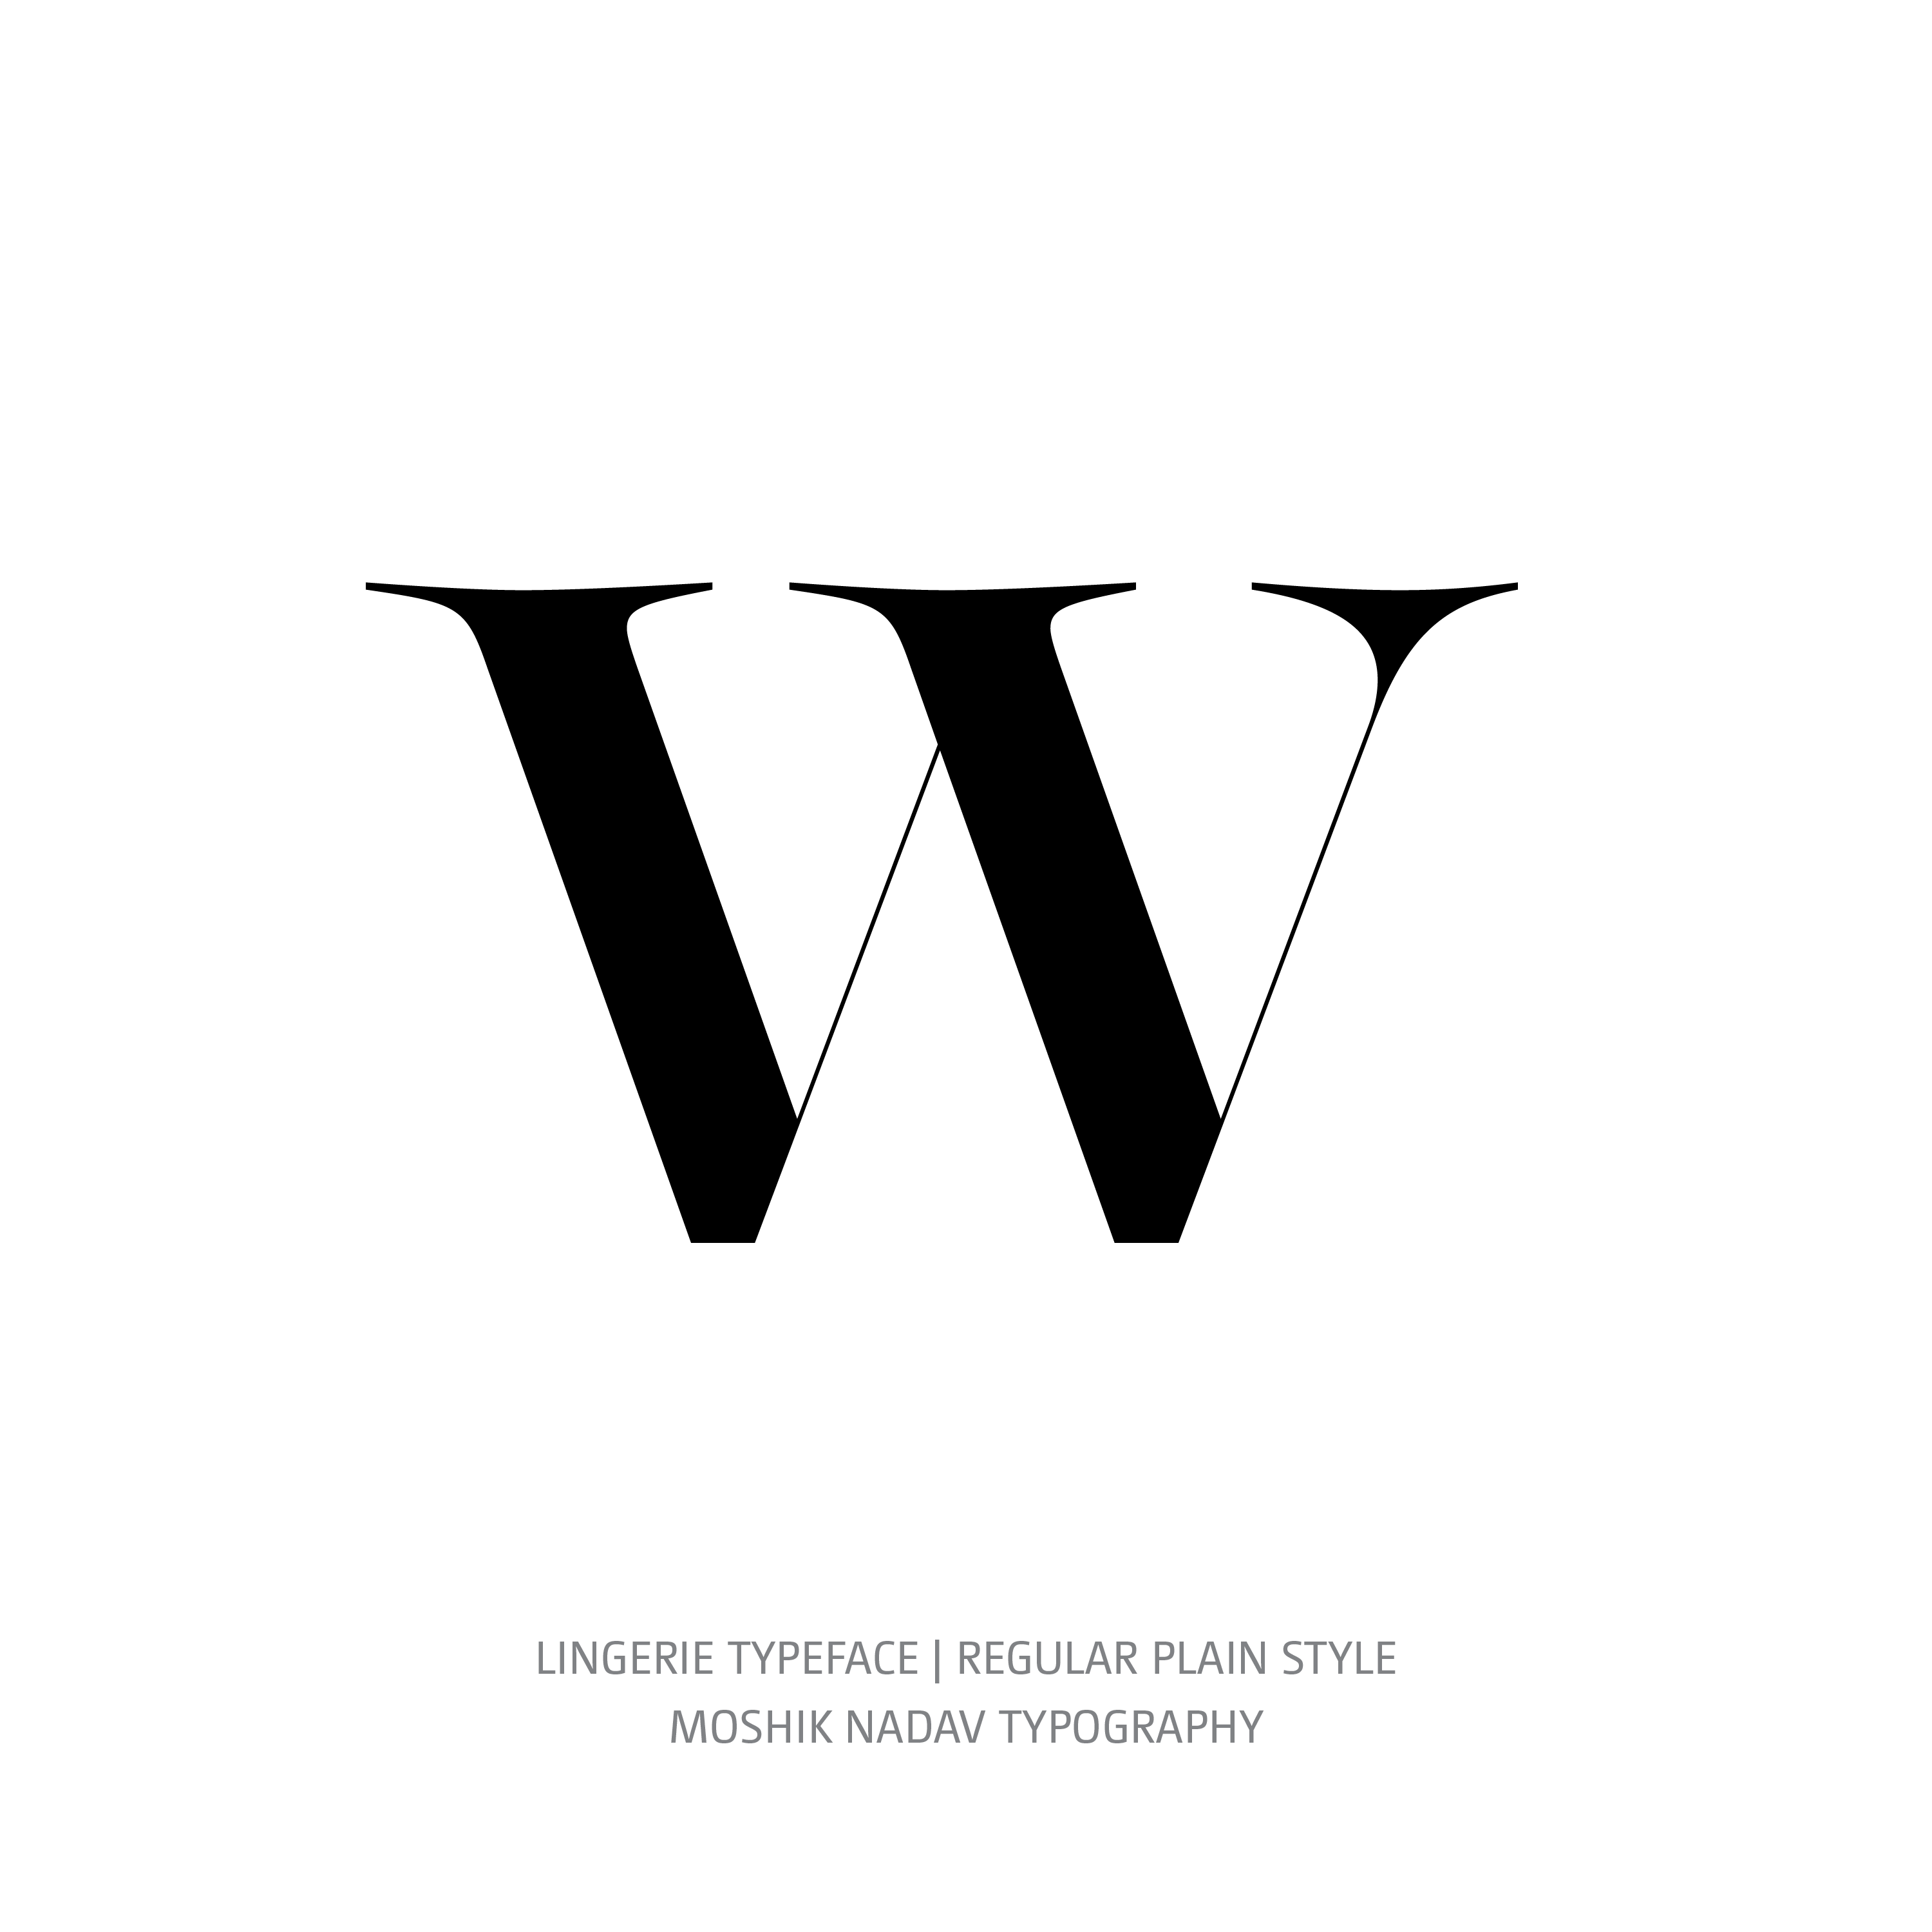 Lingerie Typeface Regular Plain w